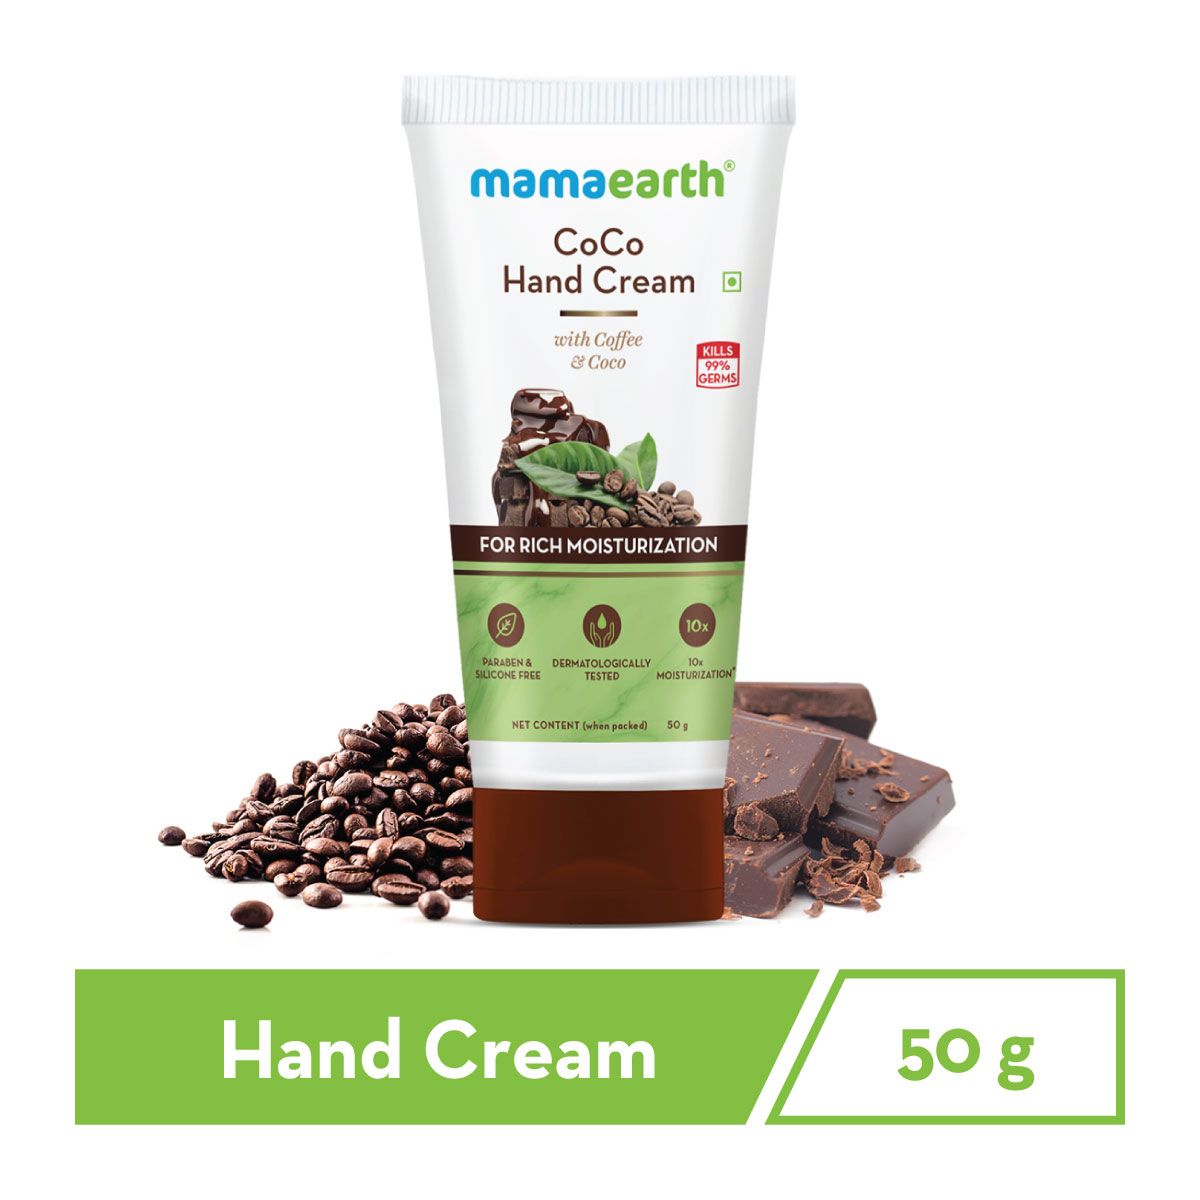 Mamaearth coco hand cream